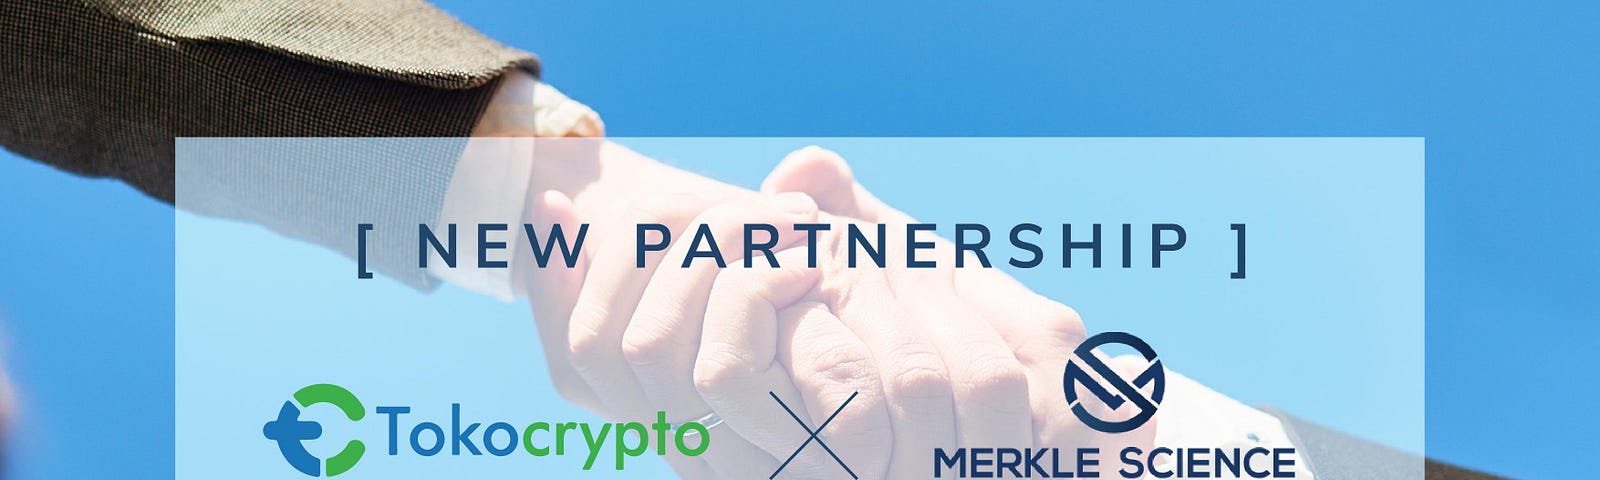 Tokocrypto Partnership with Merkle Science